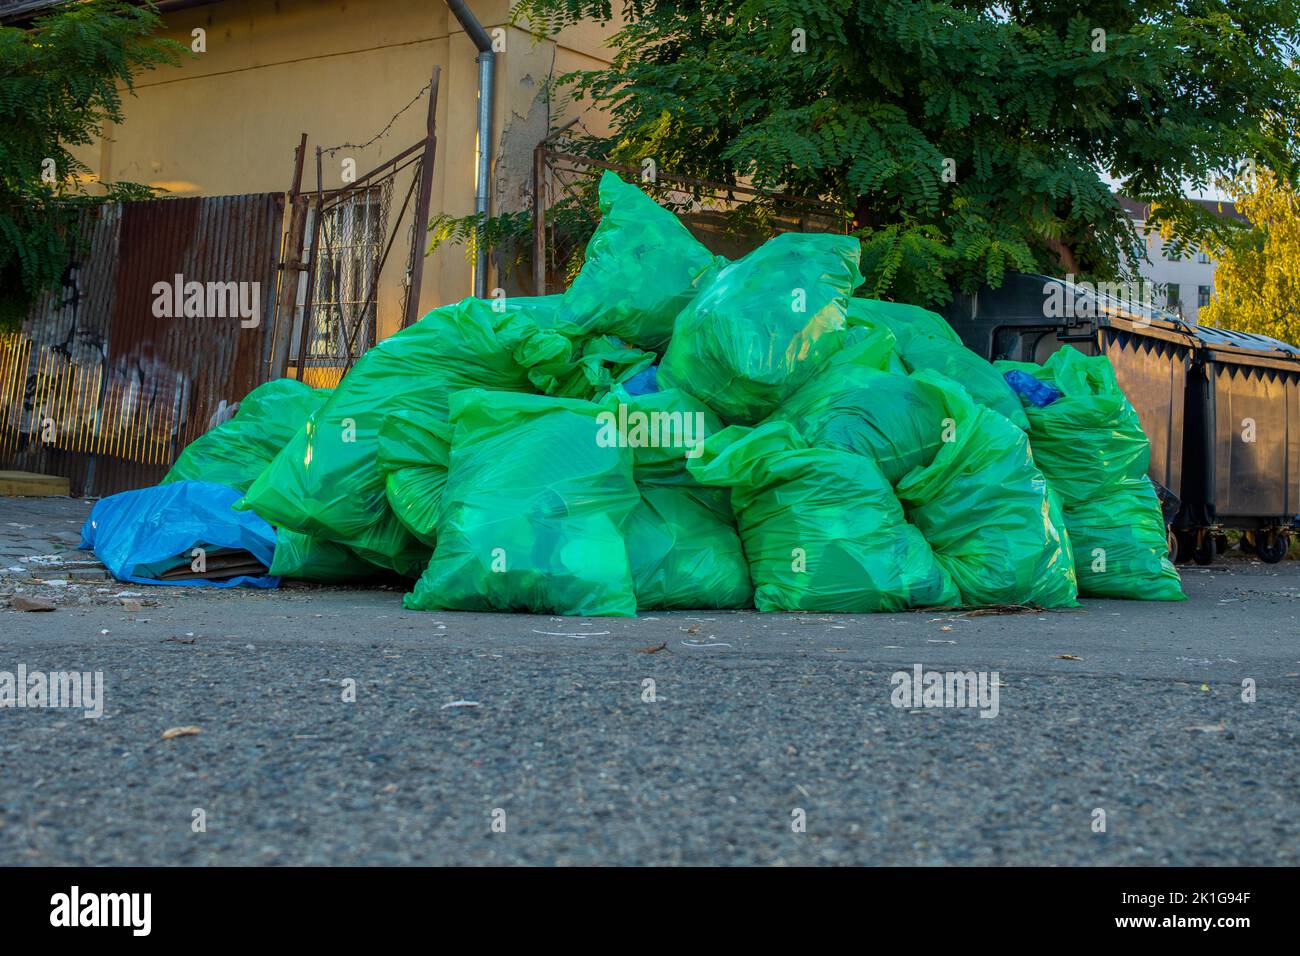 Vue des piles de déchets plastiques déversés sur le côté de la route, près des arbres et des bâtiments. Gros plan. Banque D'Images